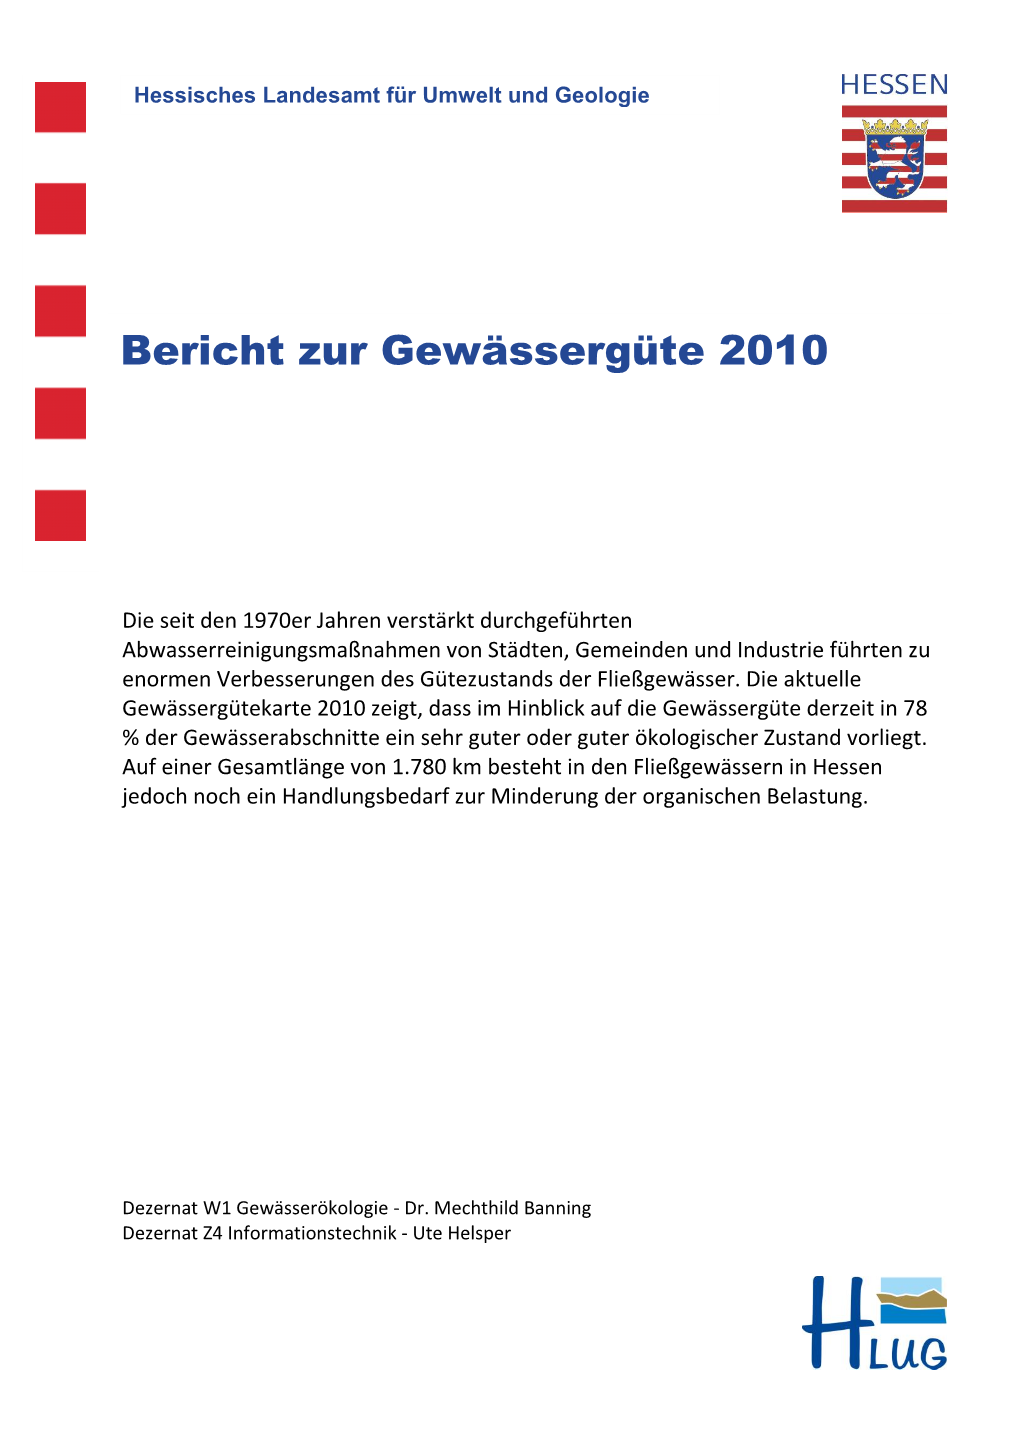 Bericht Zur Gewässergüte 2010